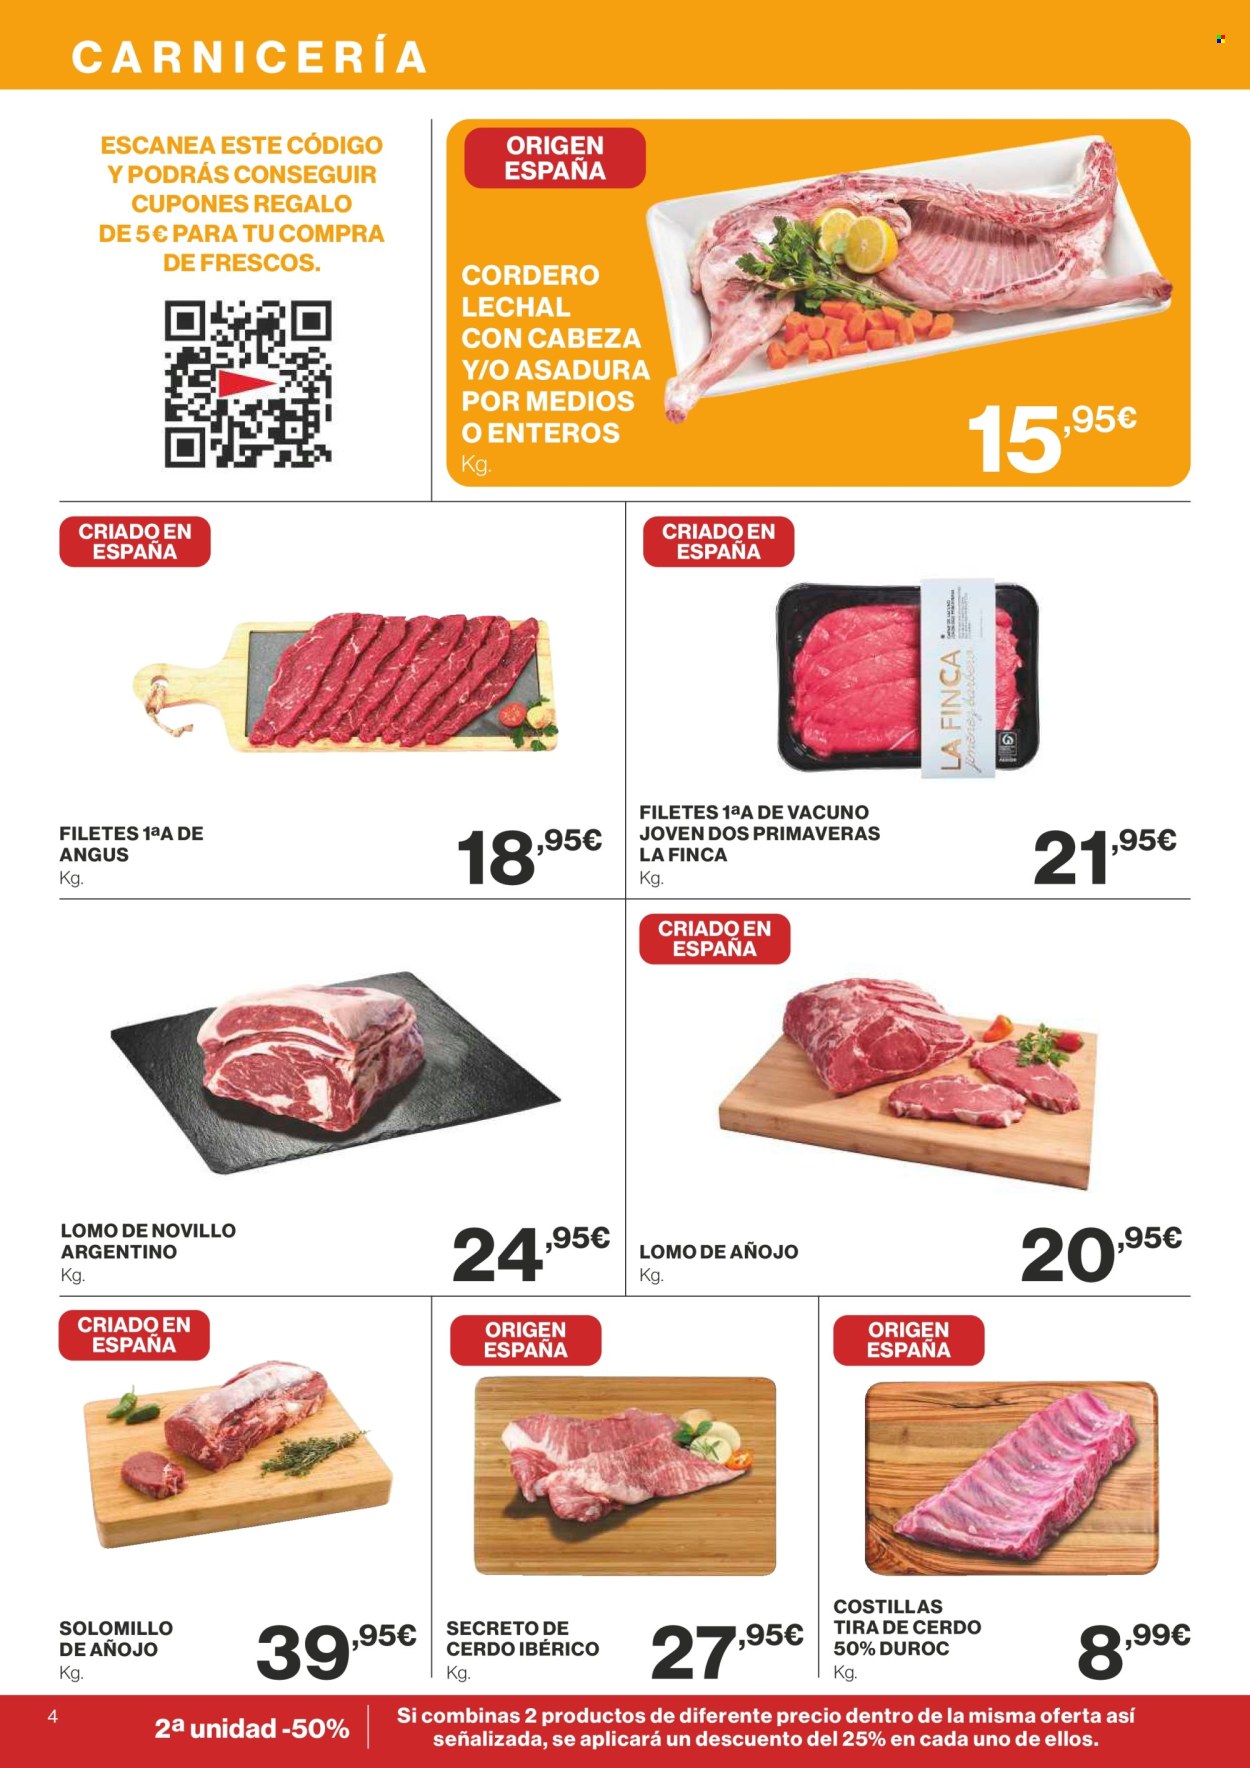 thumbnail - Folleto actual Supercor supermercados - 25/04/24 - 08/05/24 - Ventas - lomo, solomillo, cerdo ibérico, costilla, secreto de cerdo, angus, carne de añojo, cordero, cordero lechal. Página 4.